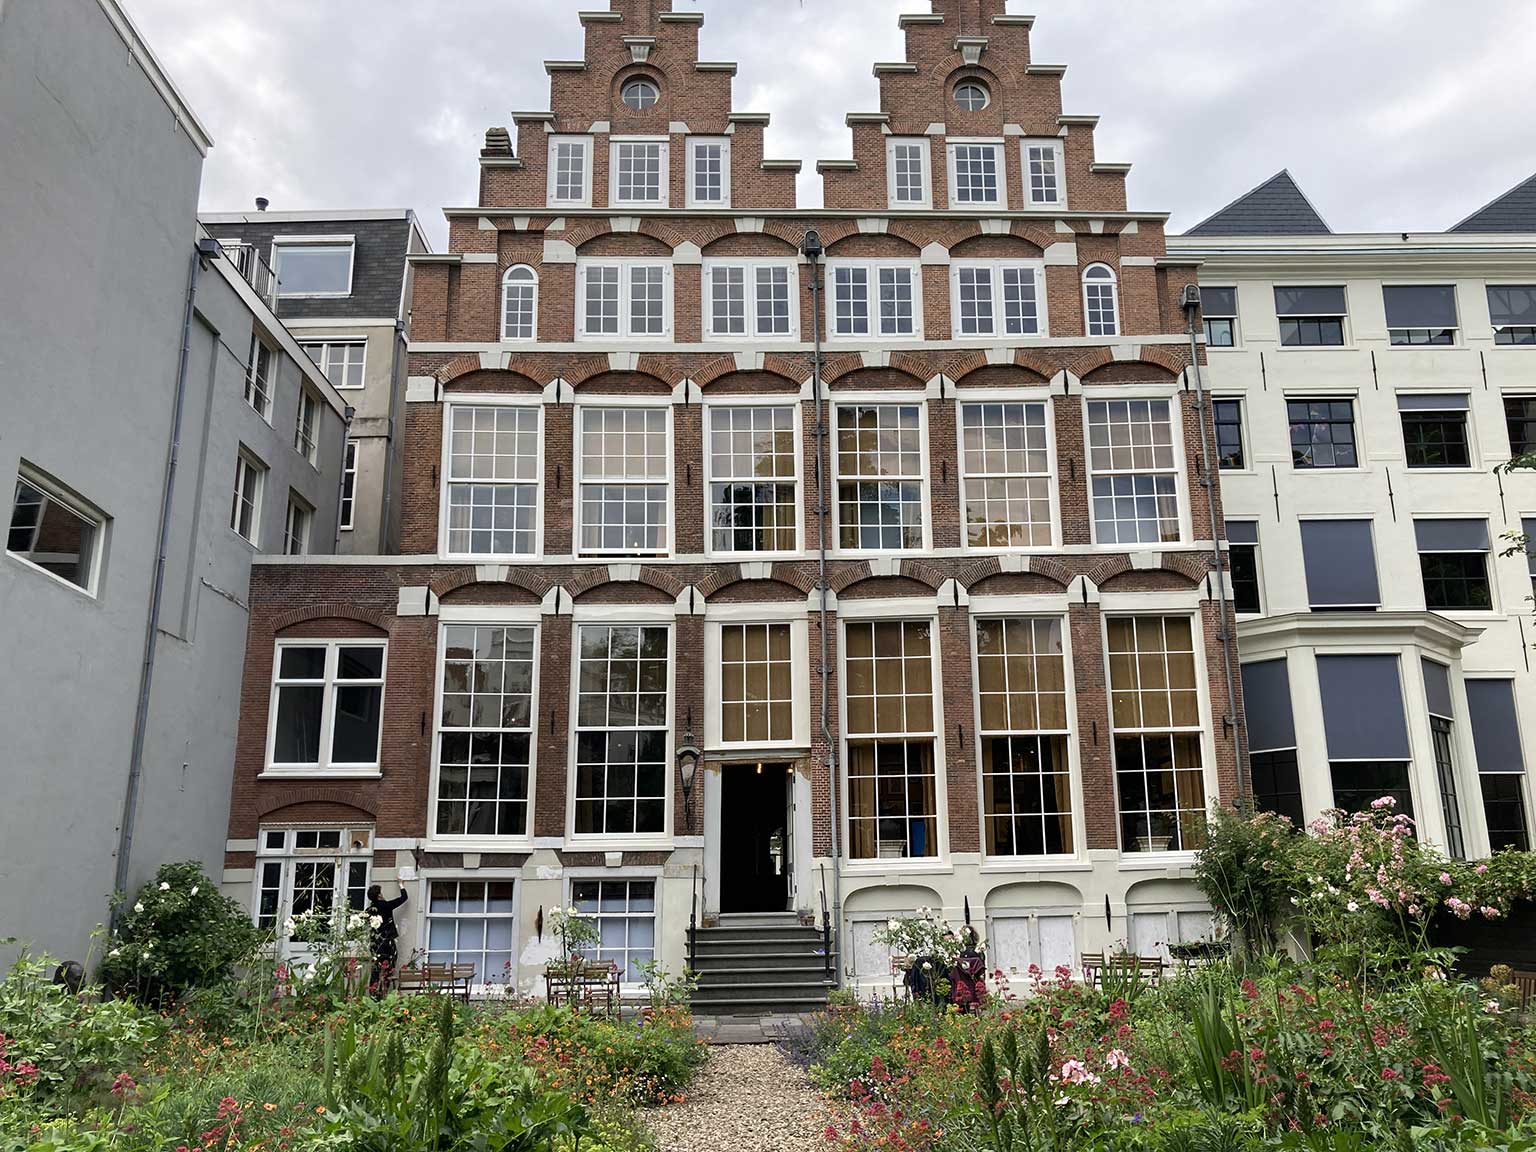 Achterkant van het Huis met de Hoofden, Amsterdam, gezien vanuit de tuin